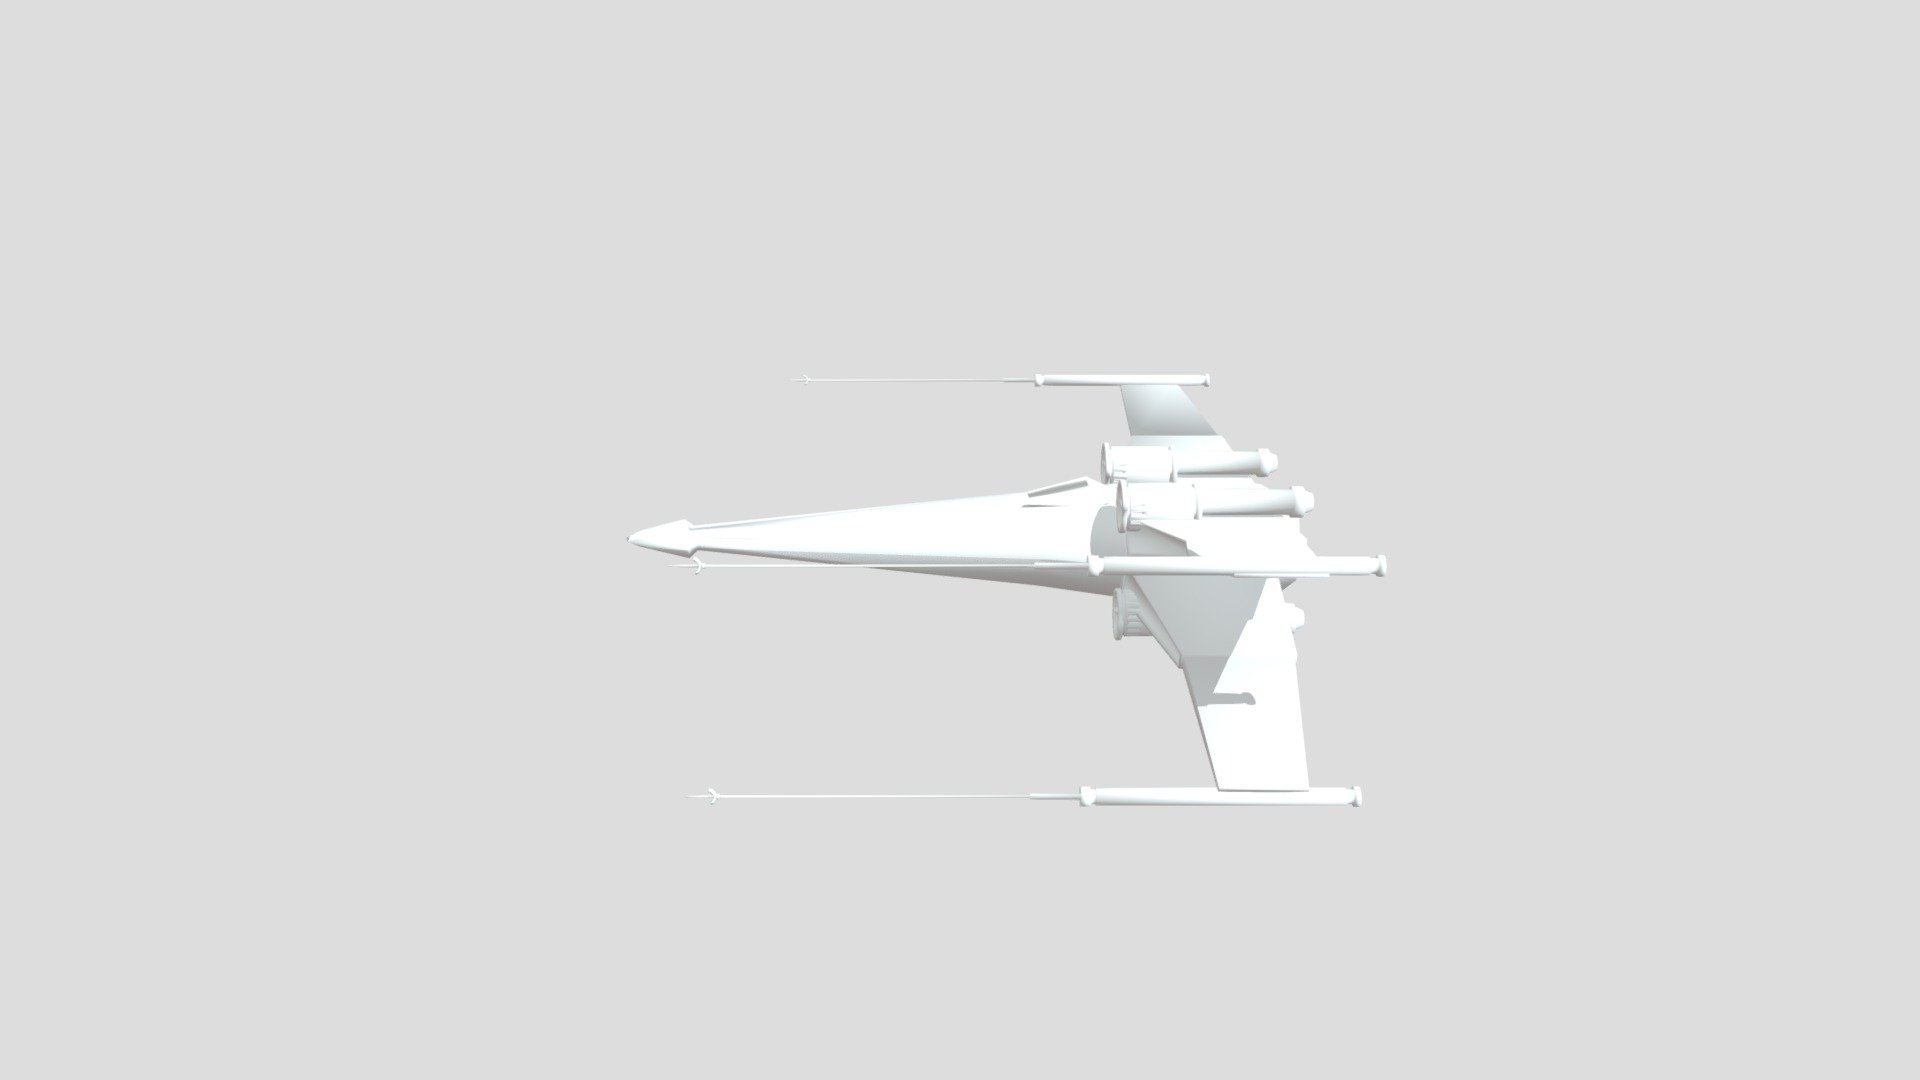 X-Wing - 3D model by PanPandaru [ff86520] - Sketchfab